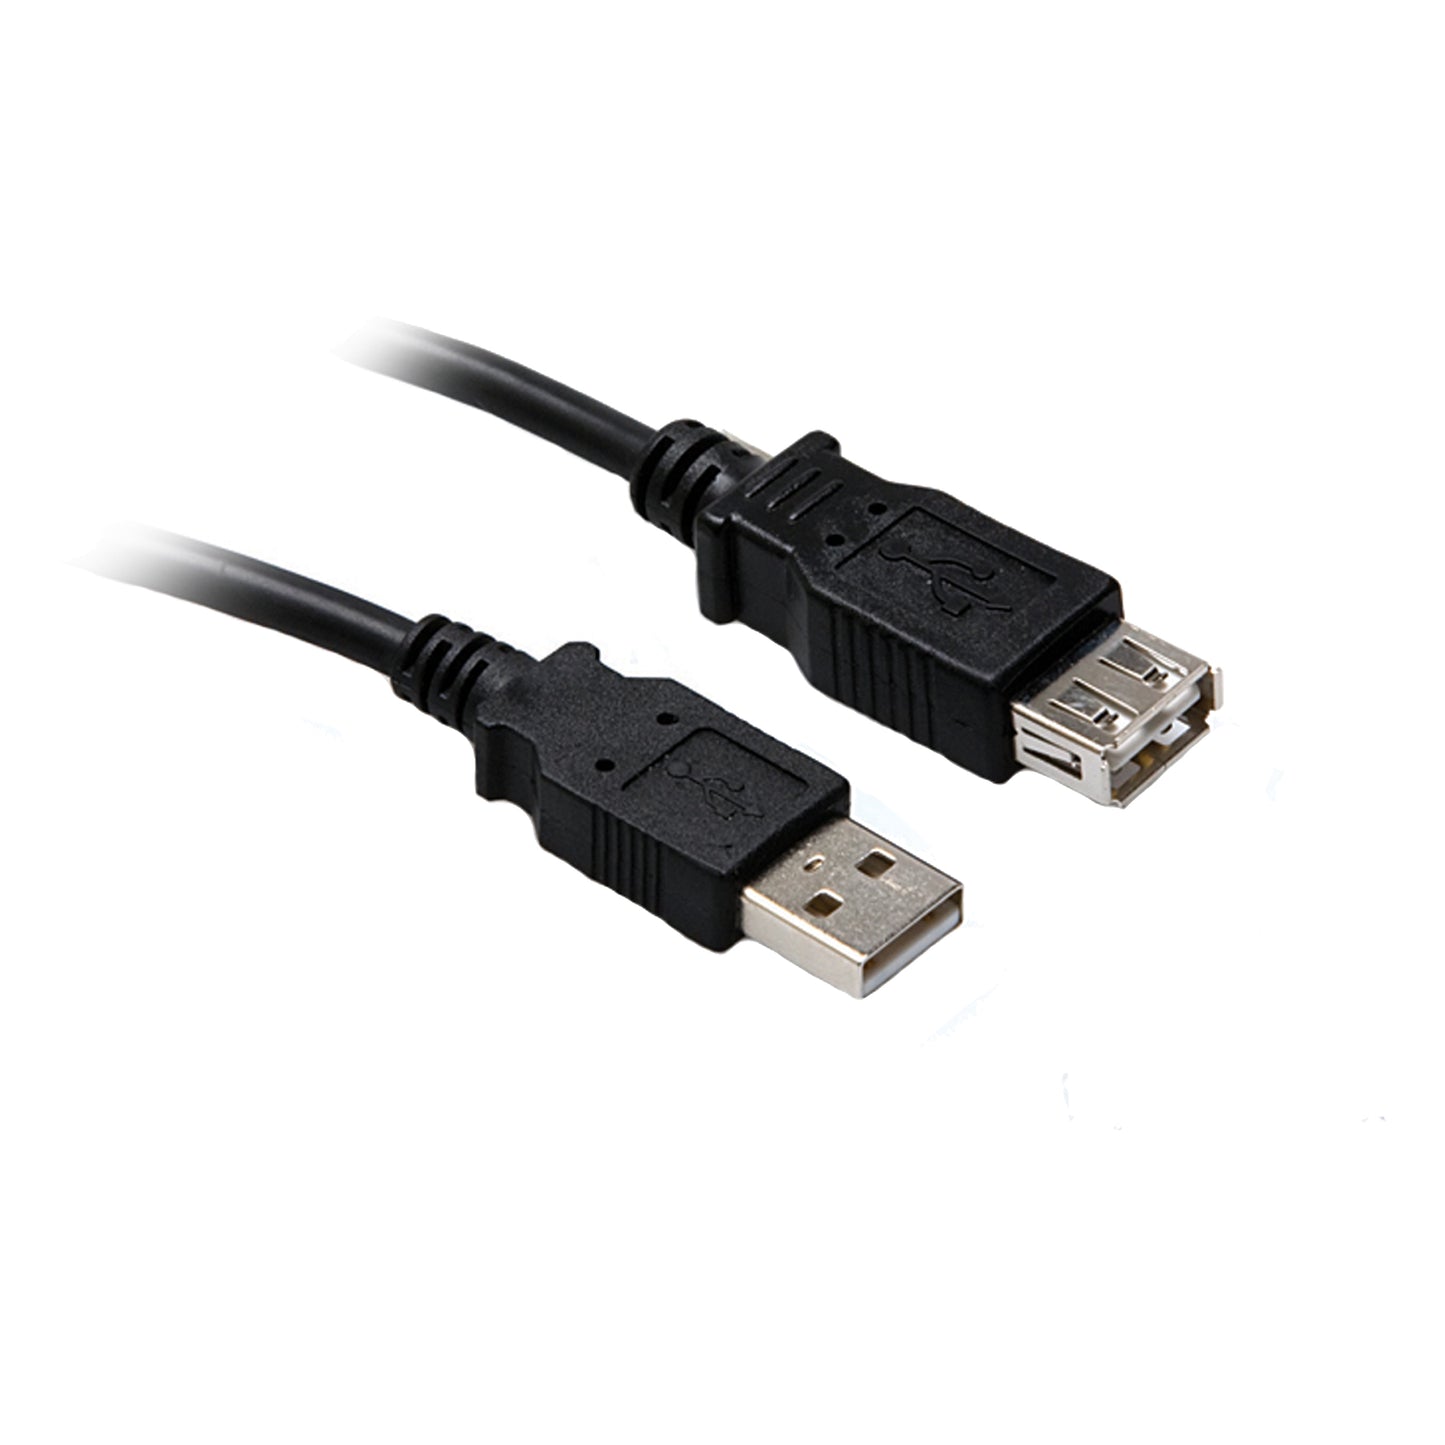 Hosa USB-210AF Usb 2.0 Ext 10ft